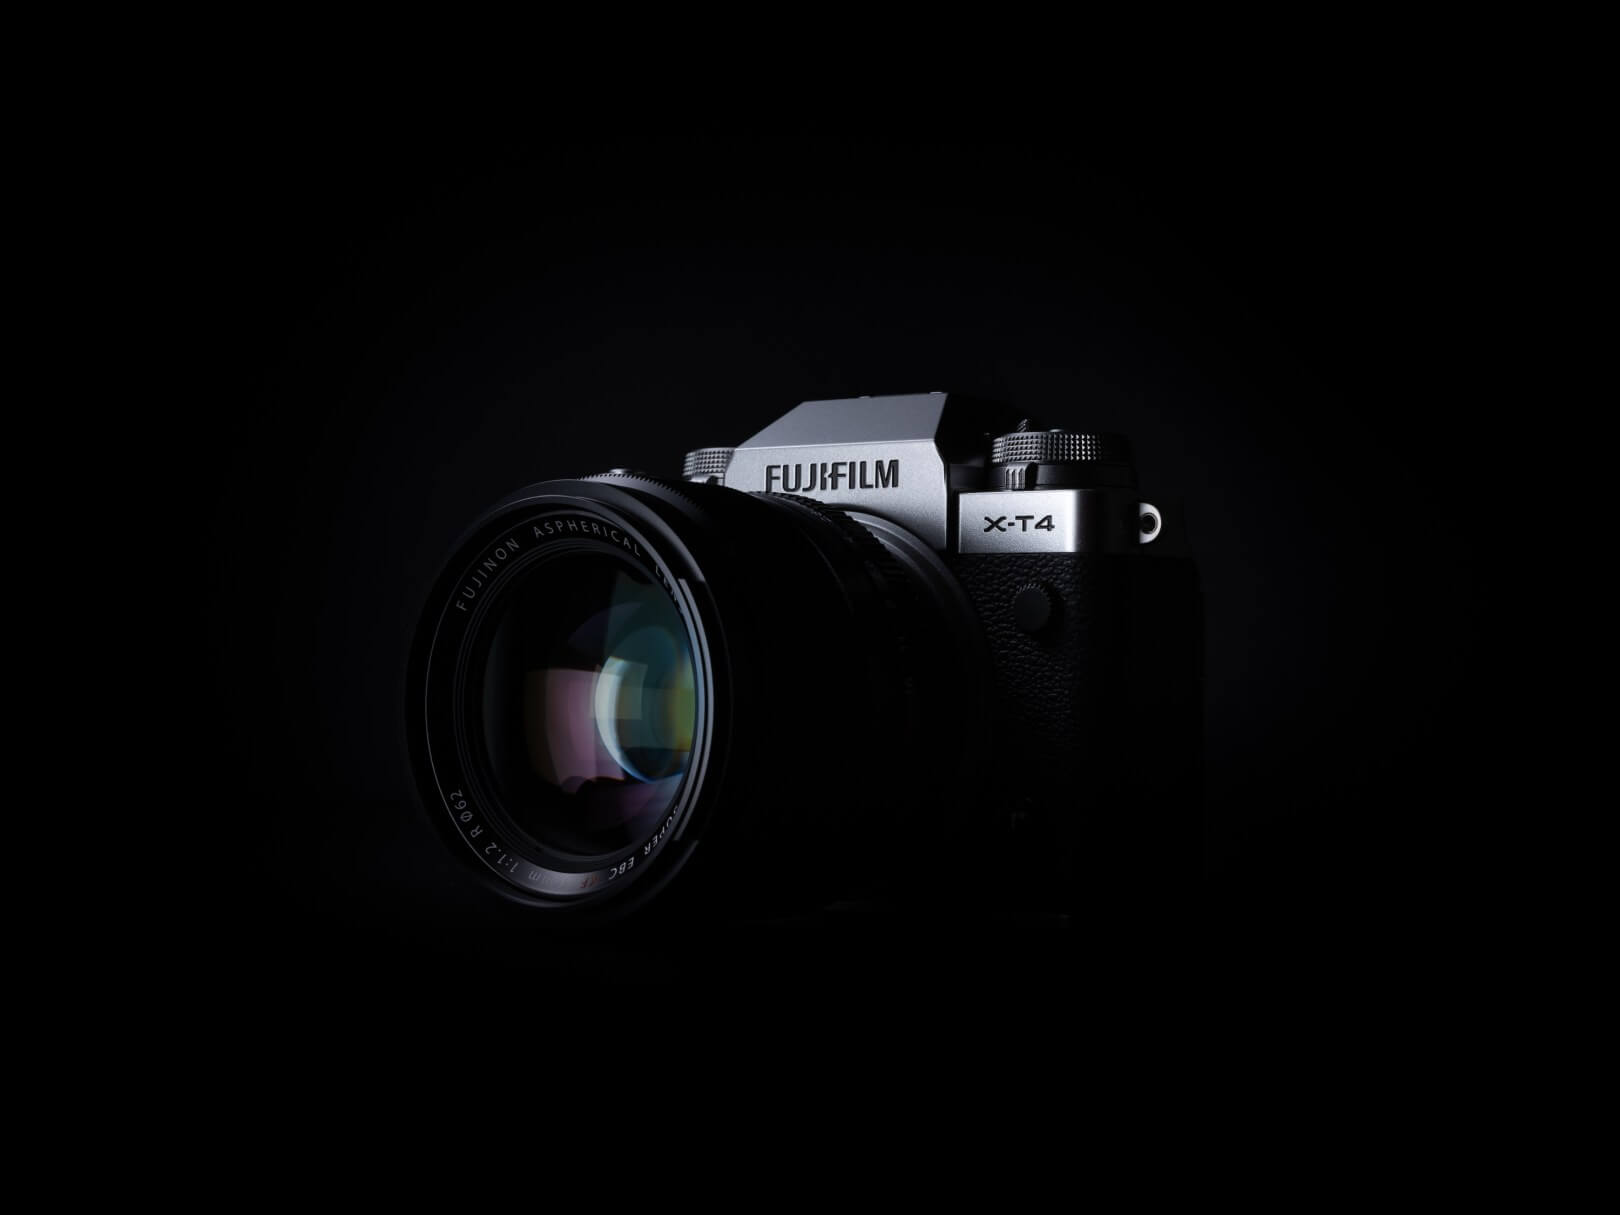 Câmera FujiFilm X-T4 Mirrorless, a Retrô da FujiFilm Evolui para uma Híbrida Moderna